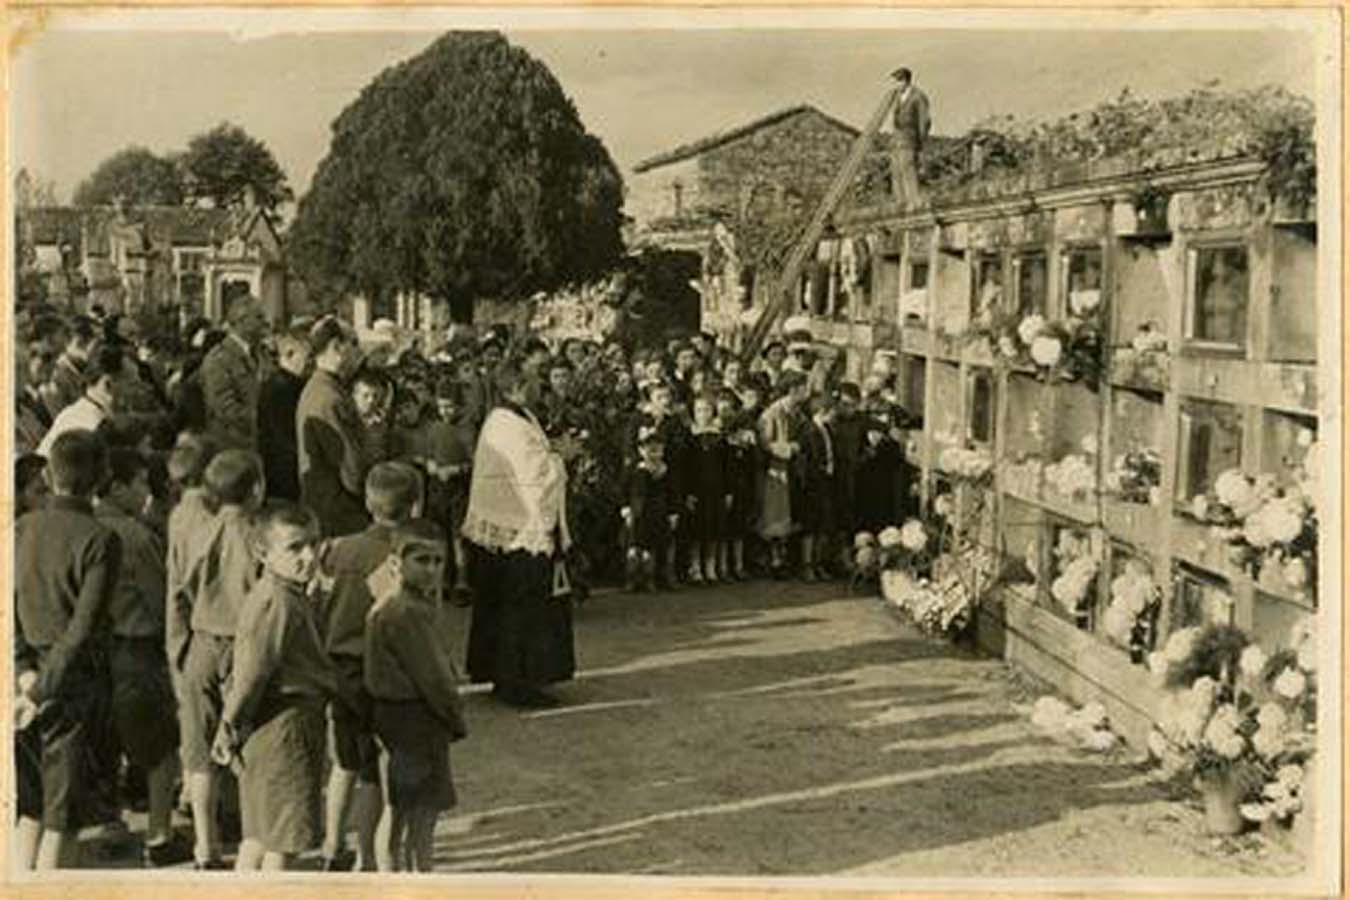 Homenaxe aos Caídos no cemiterio de Pontevedra (1954)